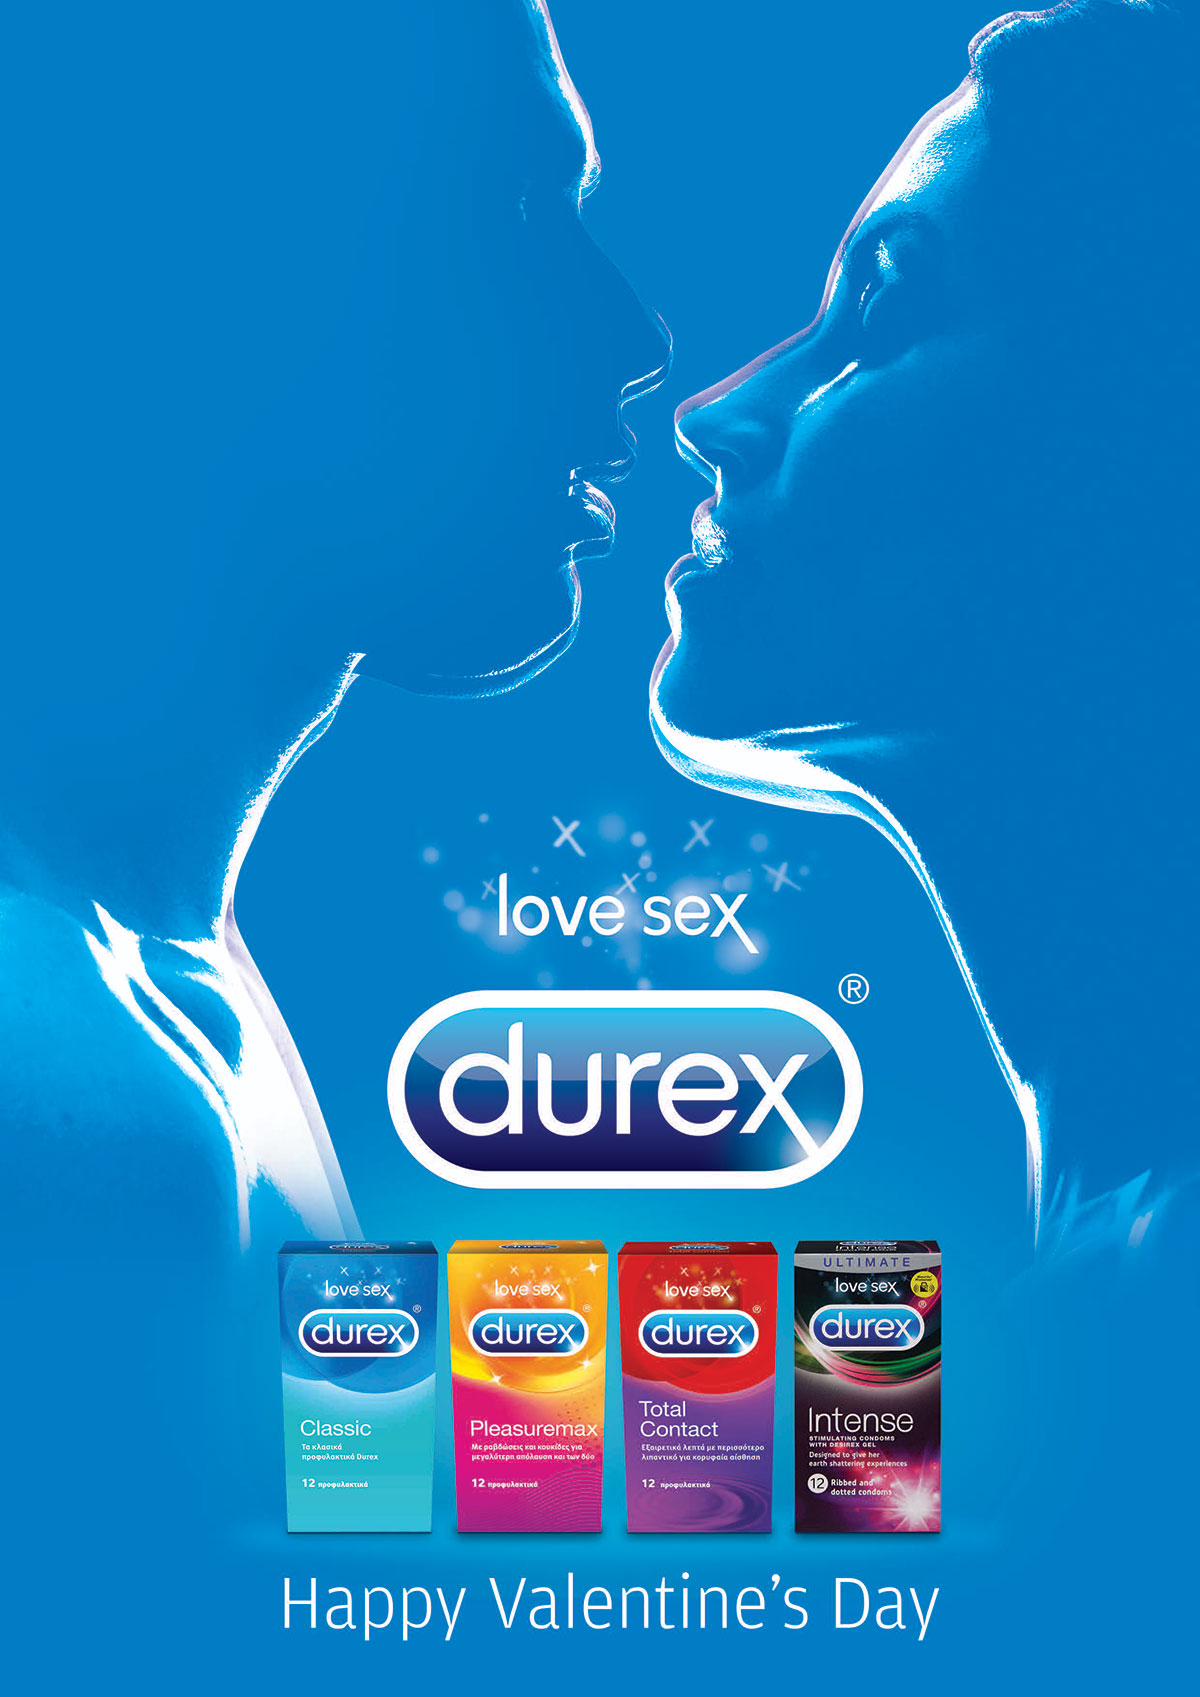 Durex 'Share the Love' alternative key visual